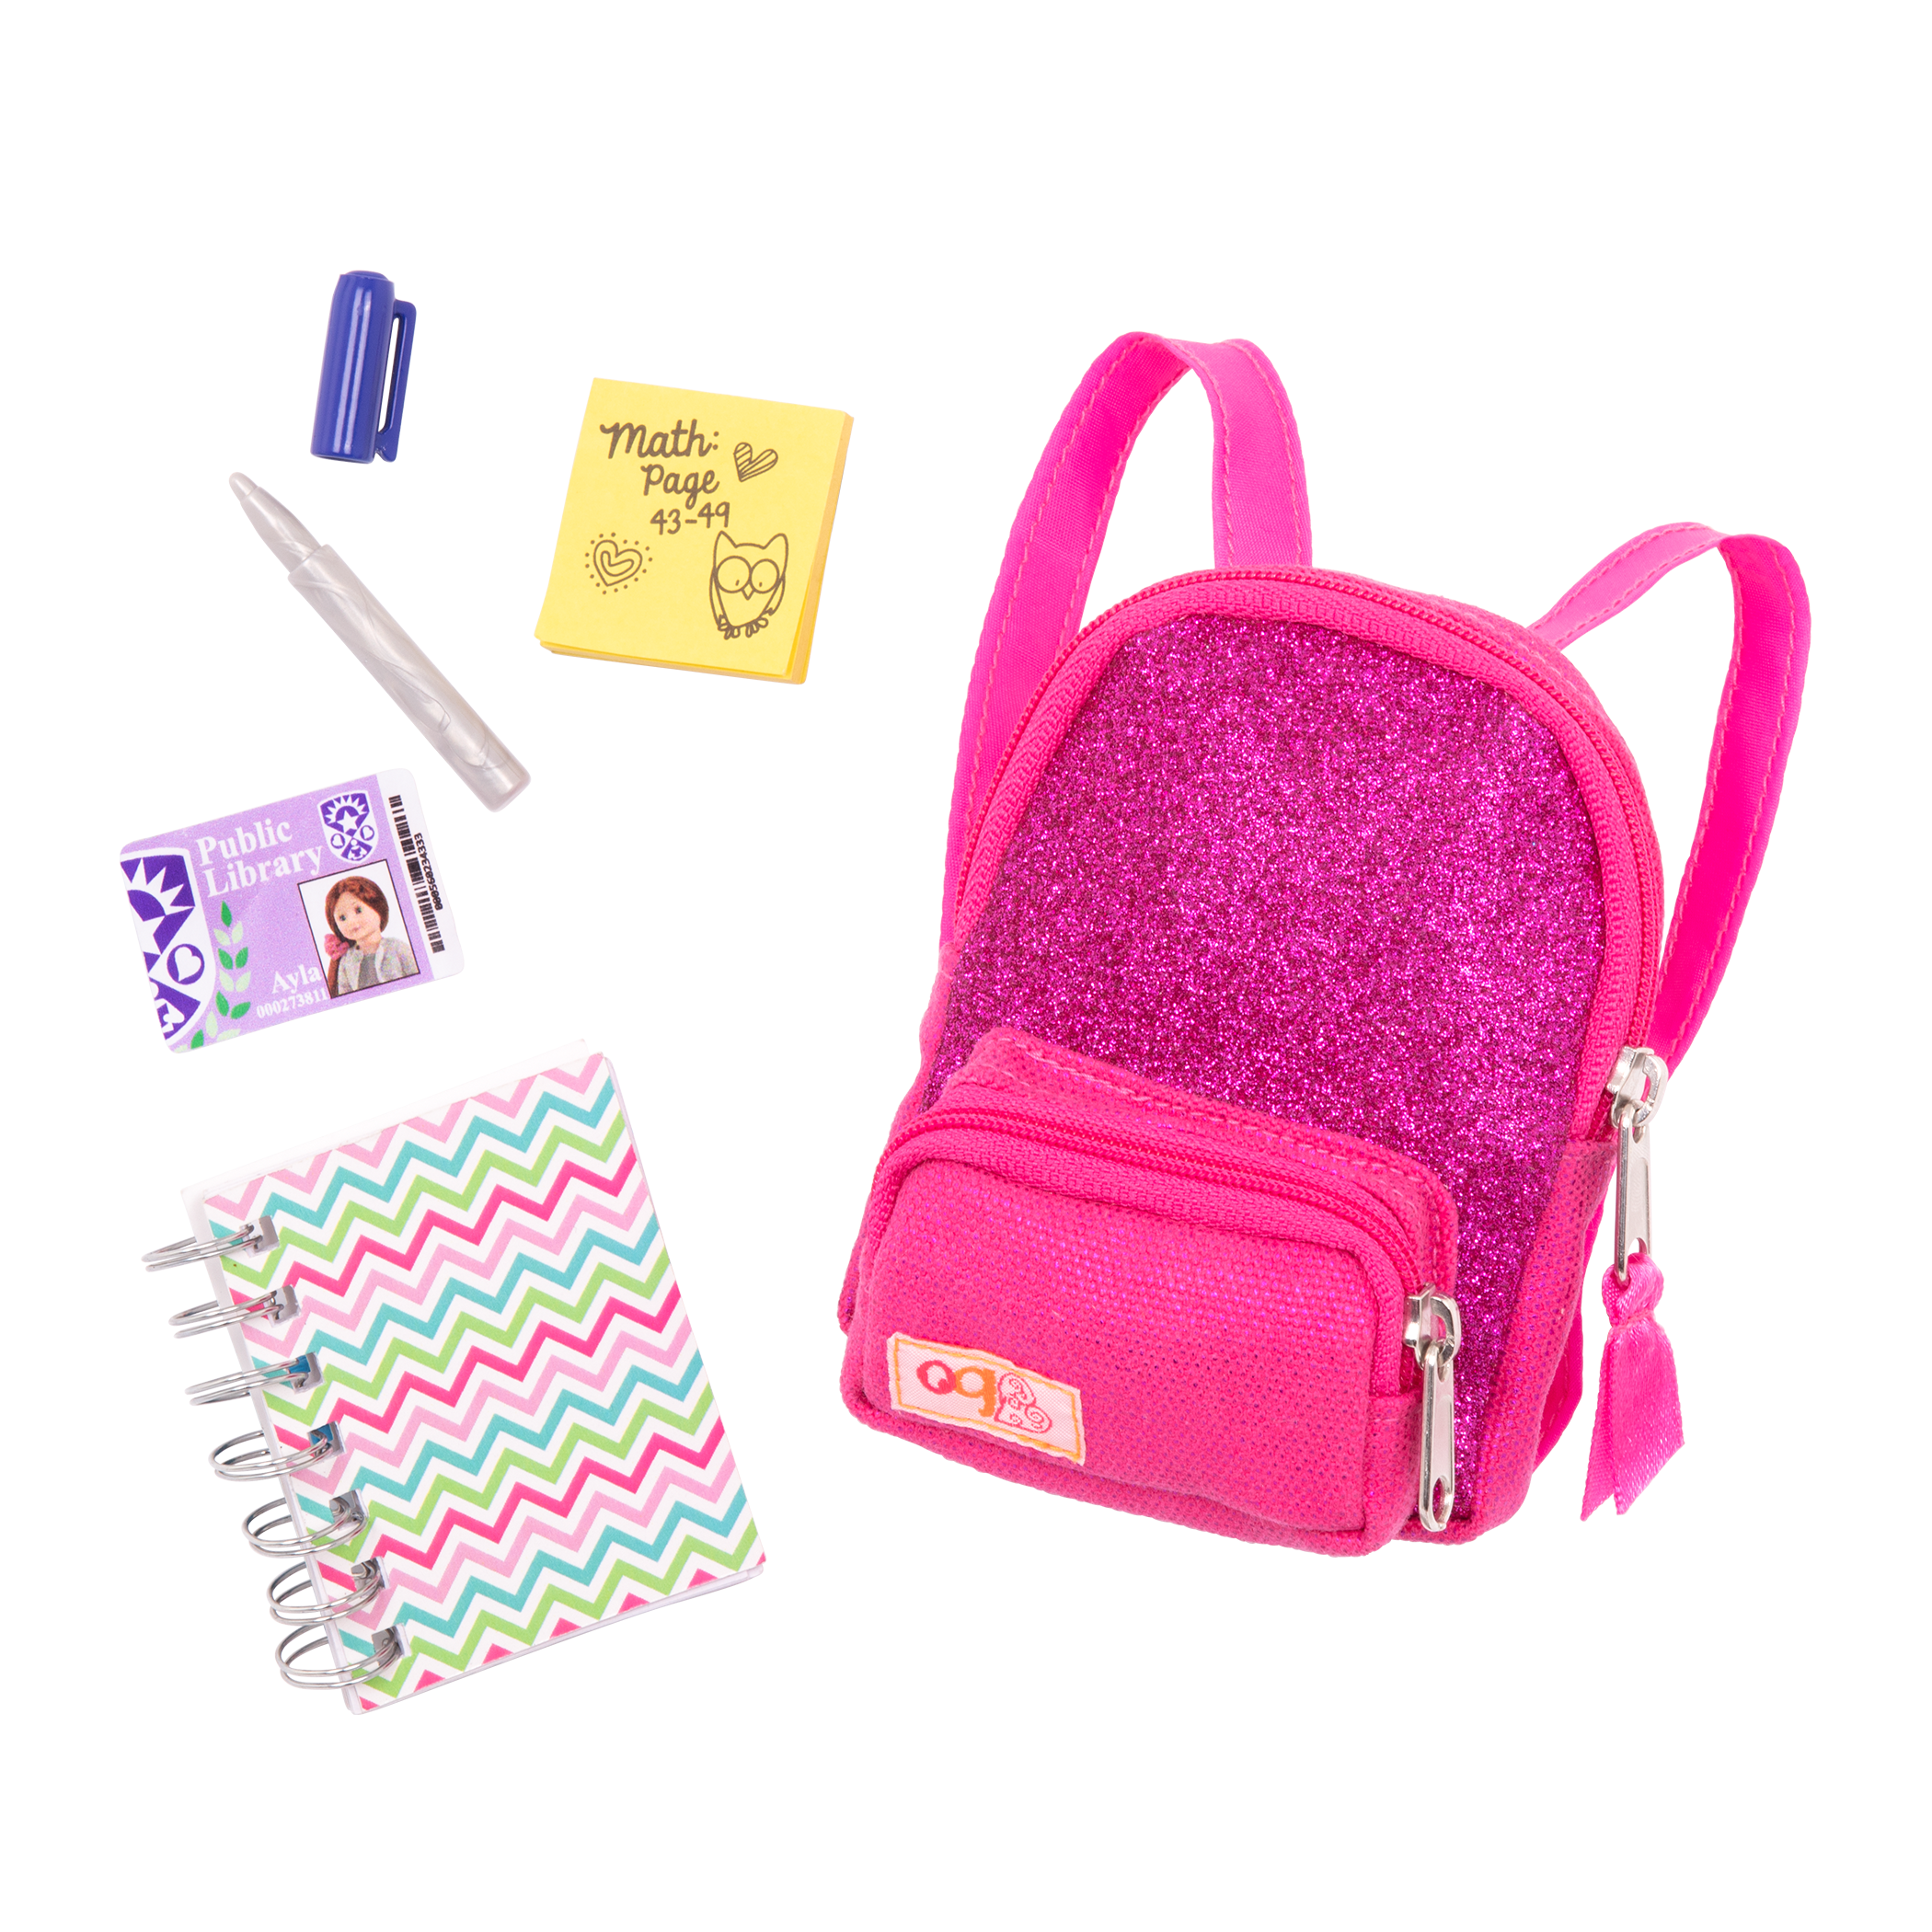 School backpack playset